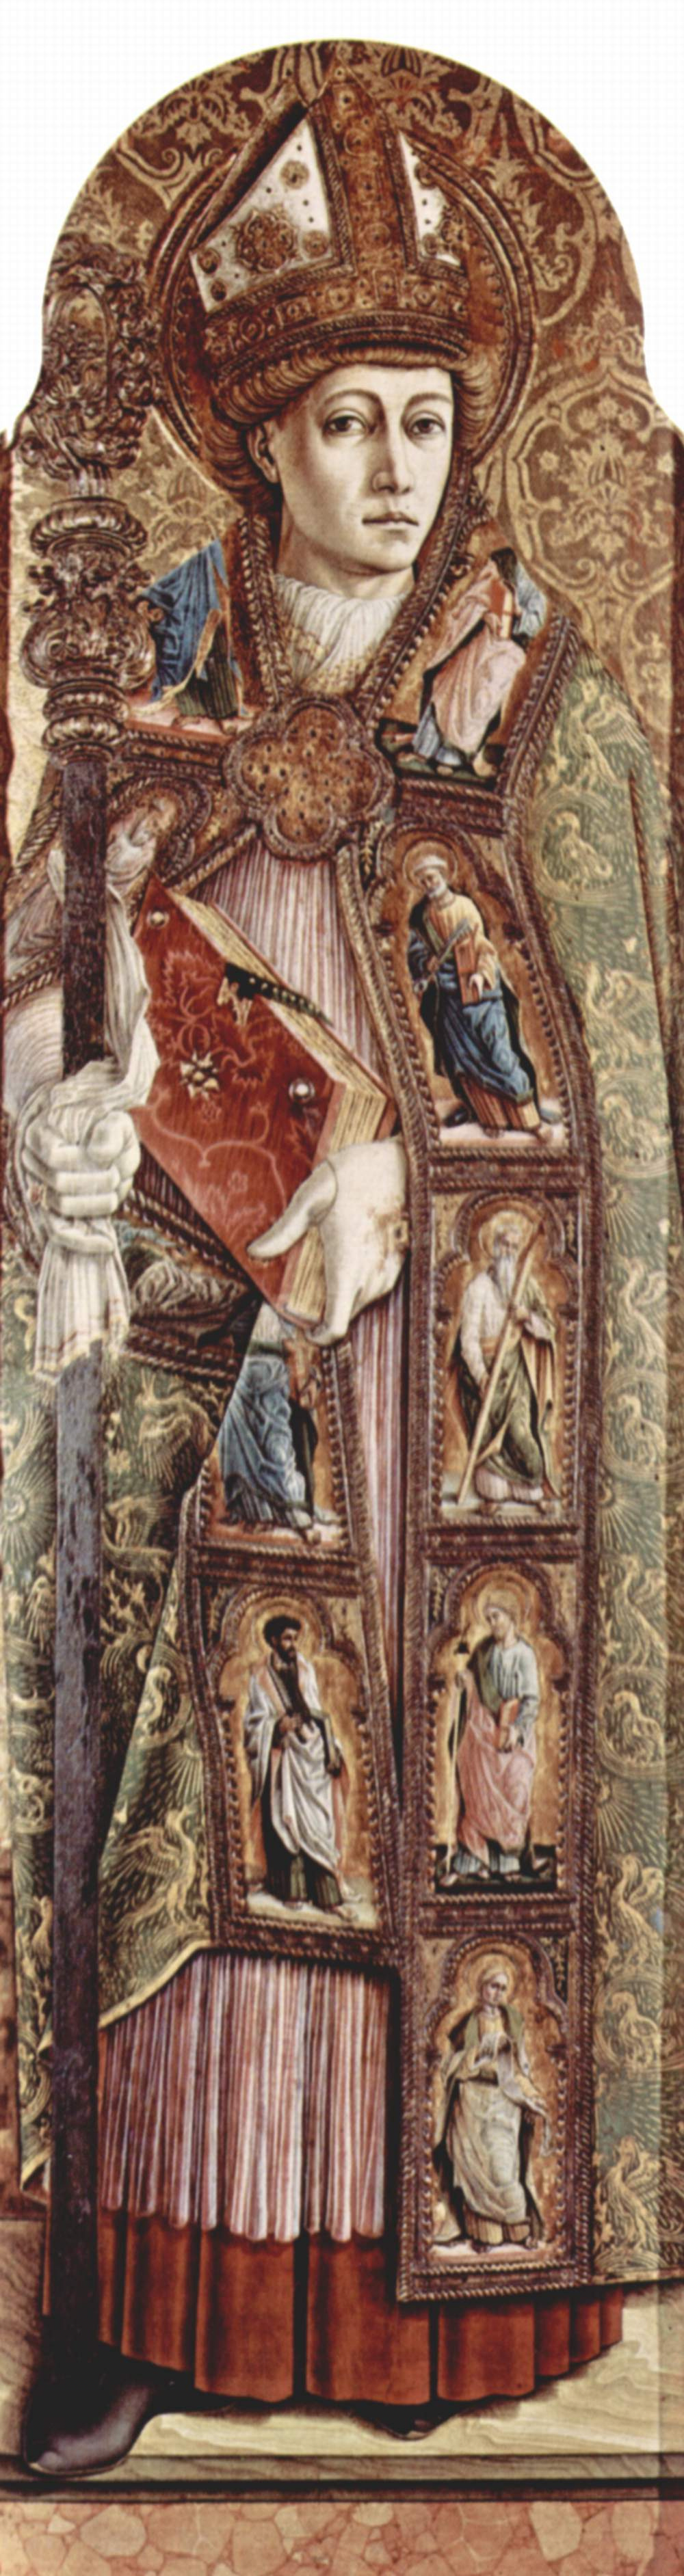 Карло Кривелли. Святой Эмидий. Центральный алтарь кафедрального собора в Асколи, полиптих, внутреняя правая доска